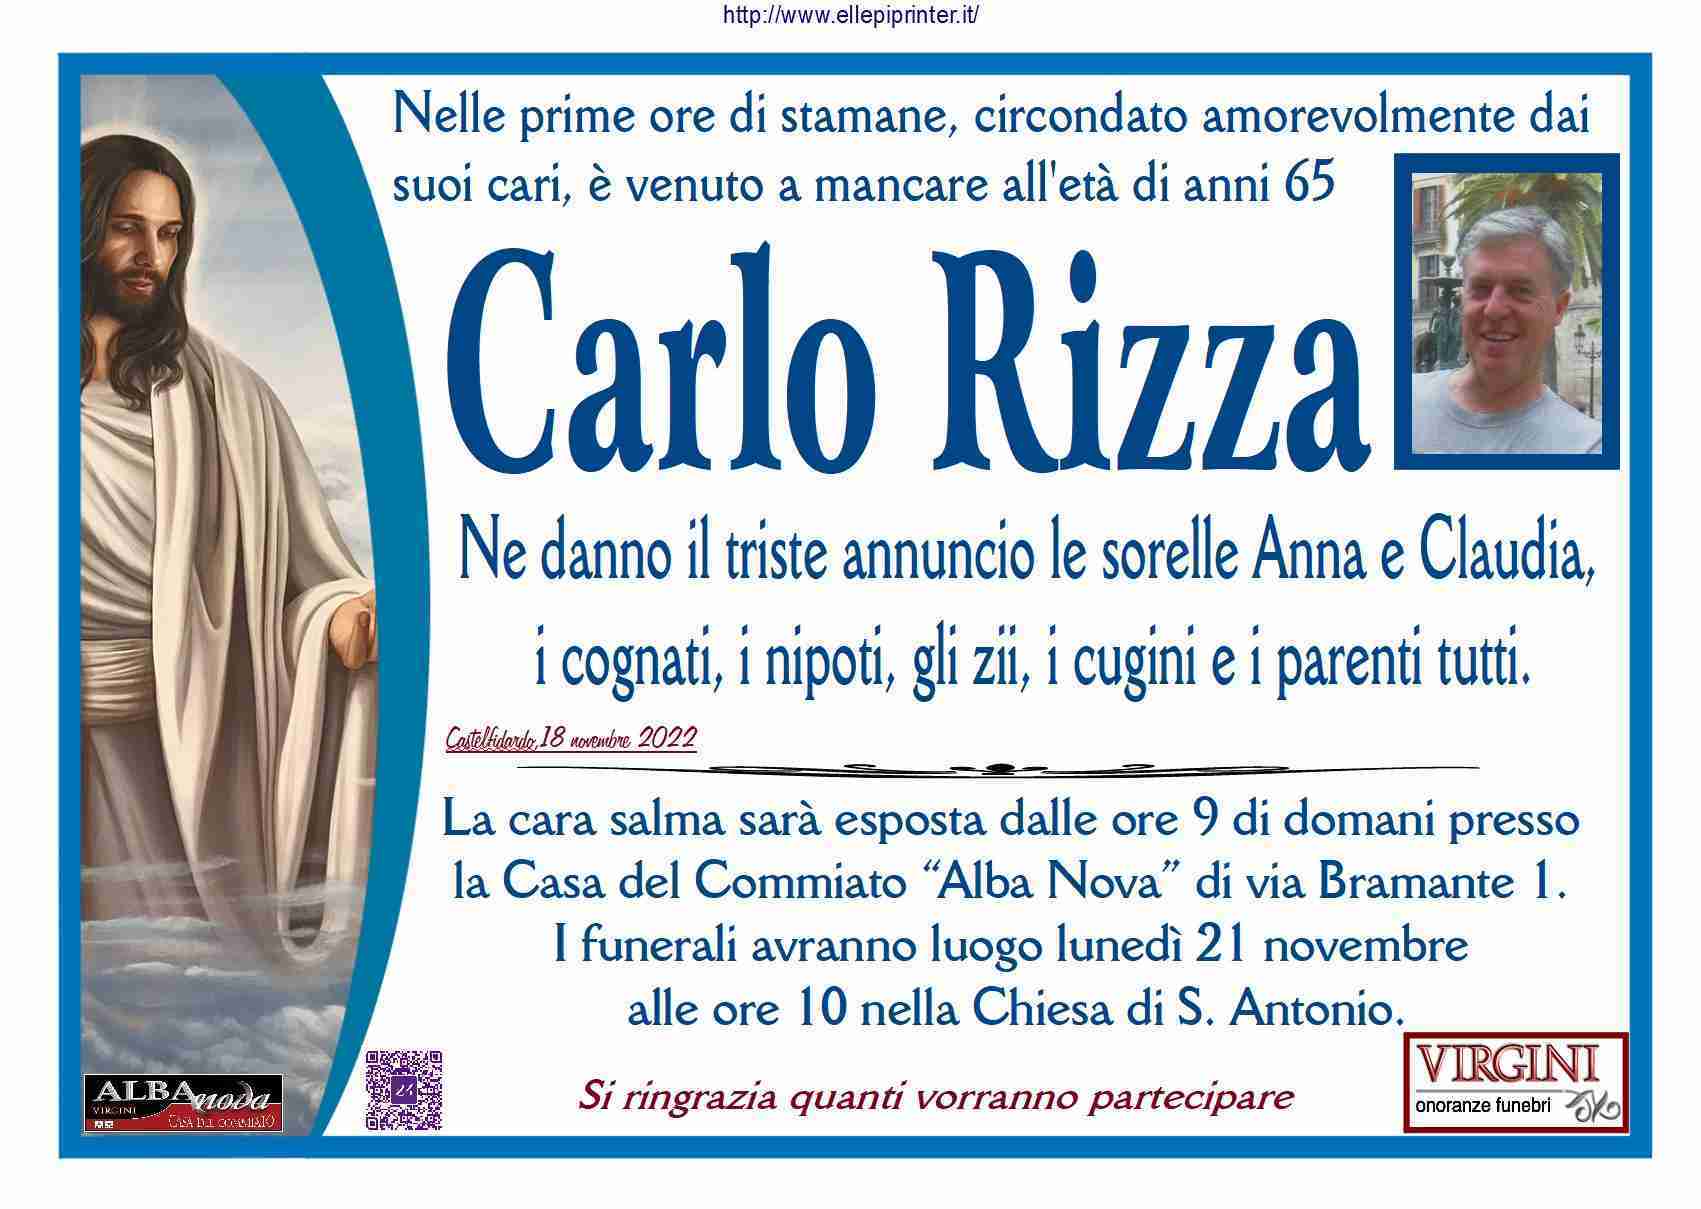 Carlo Rizza